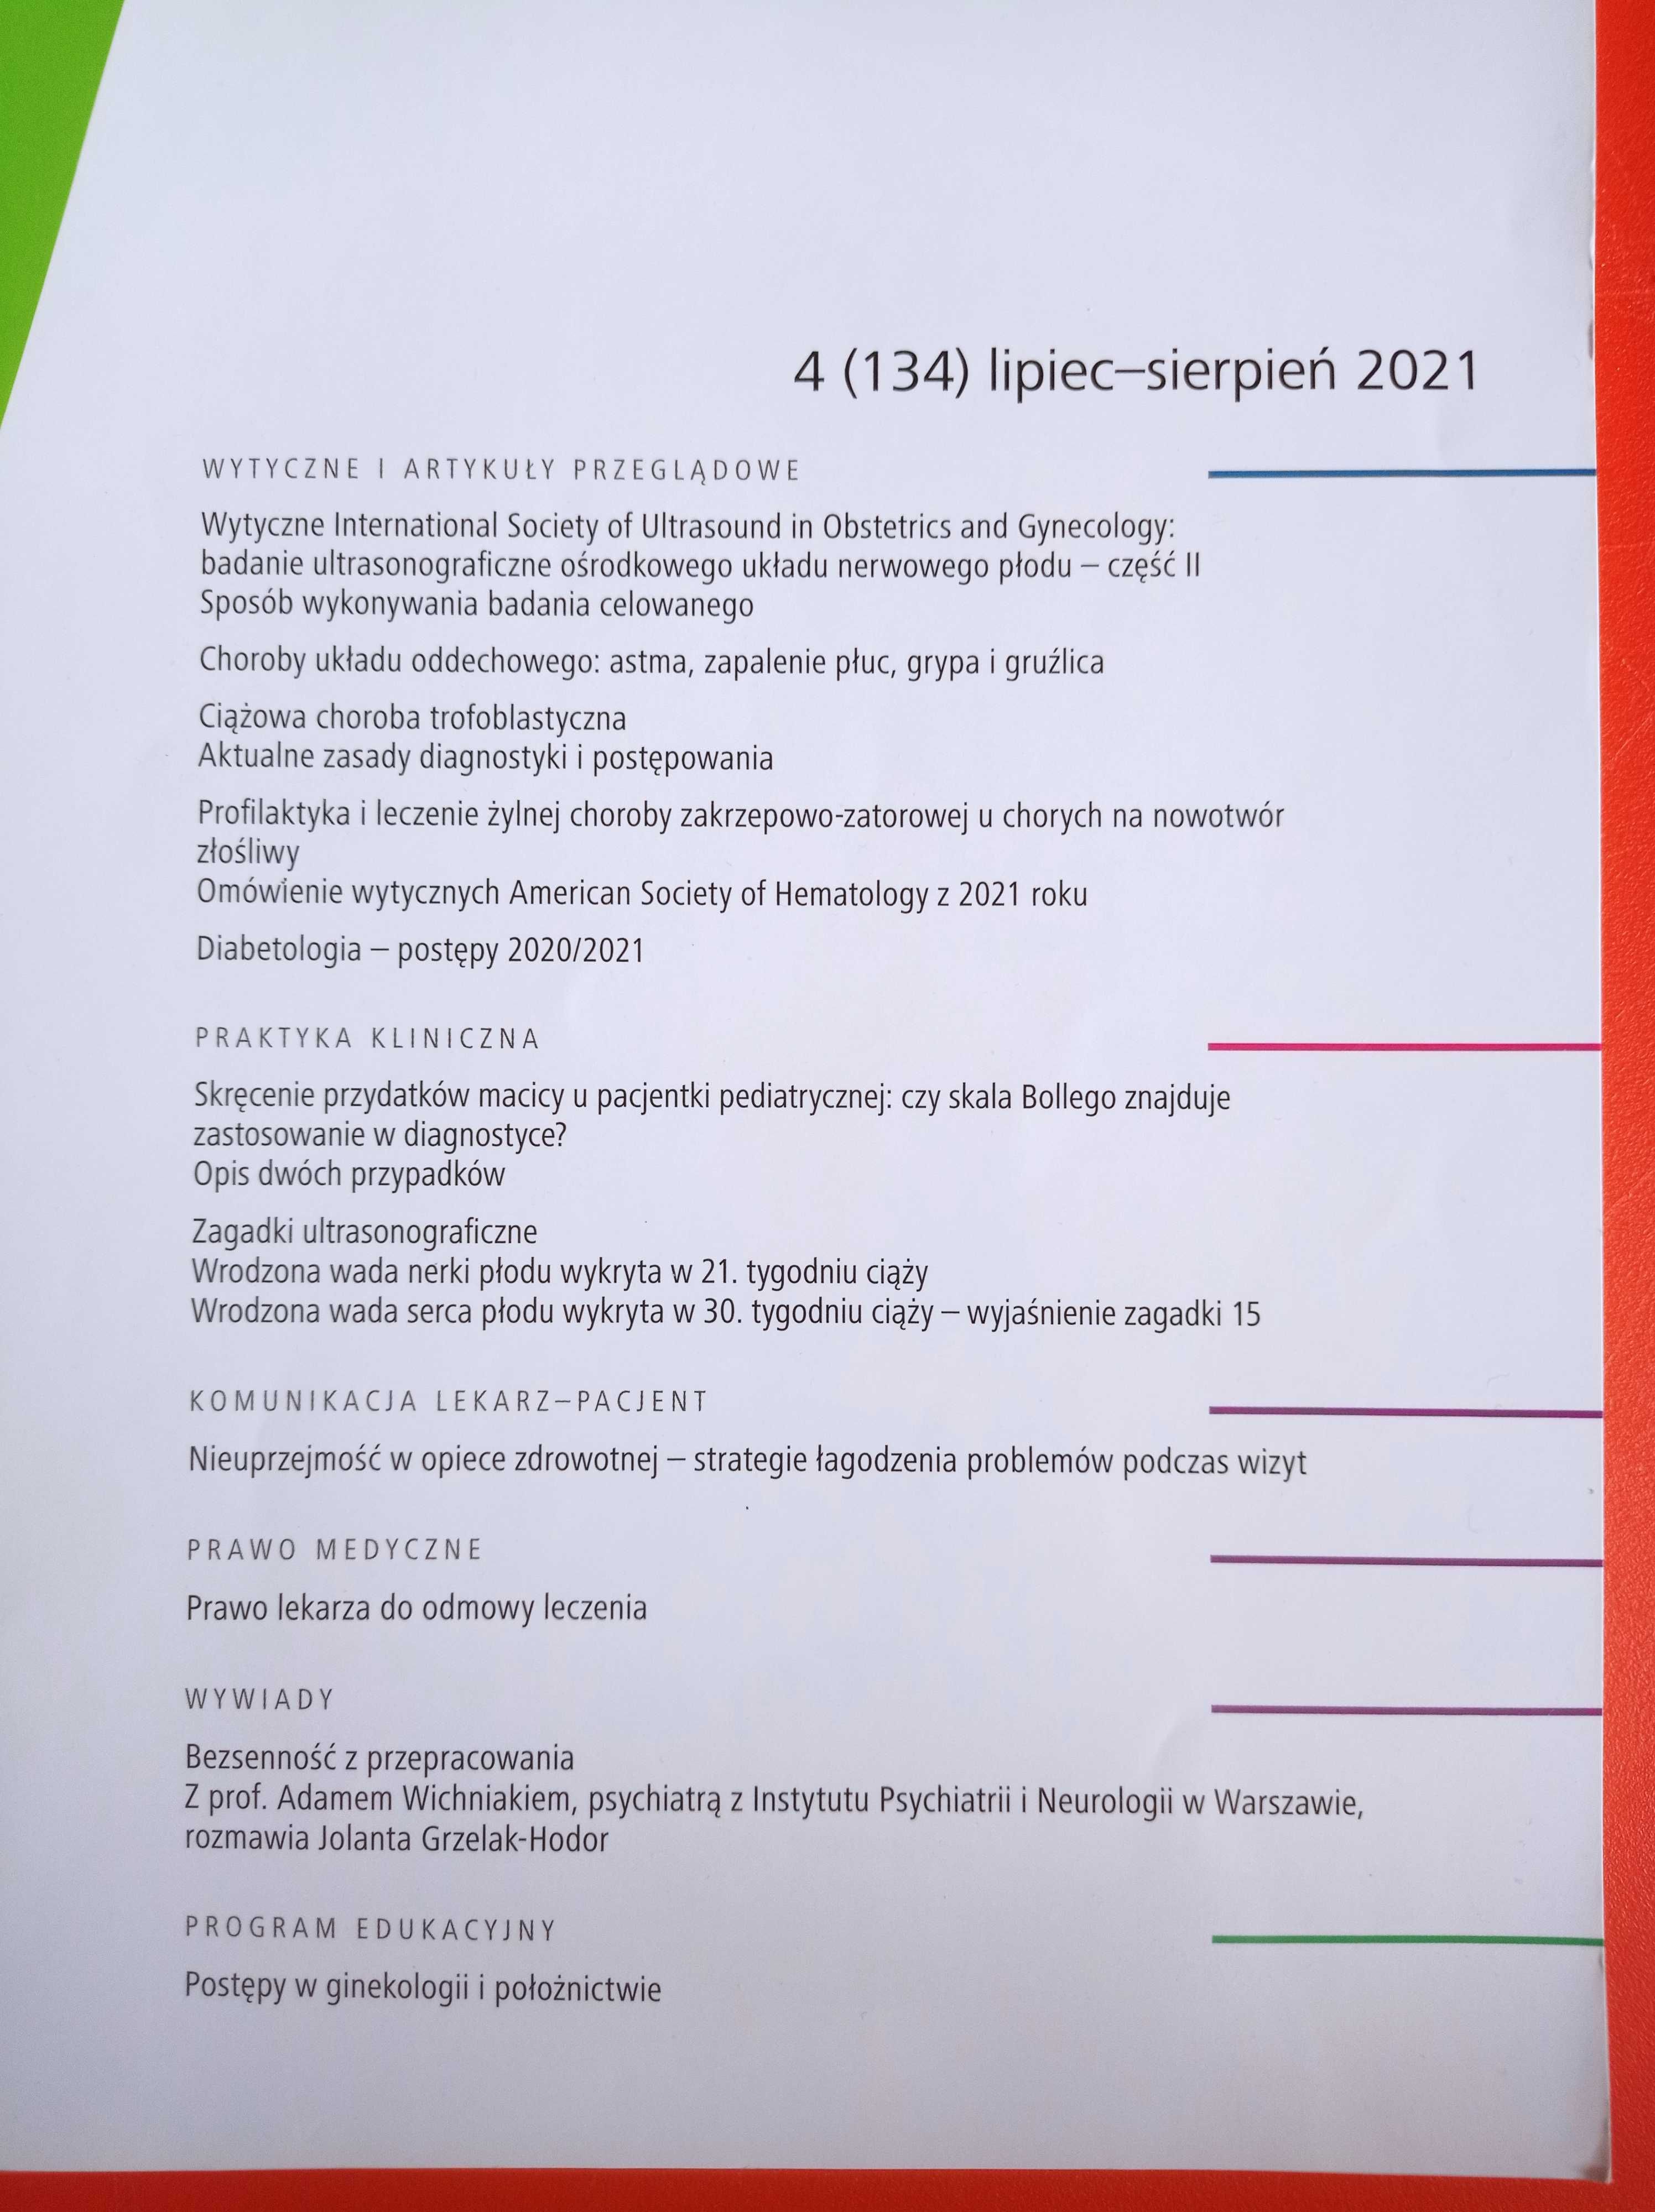 Ginekologia i Położnictwo 4/2021, lipiec-sierpień 2021